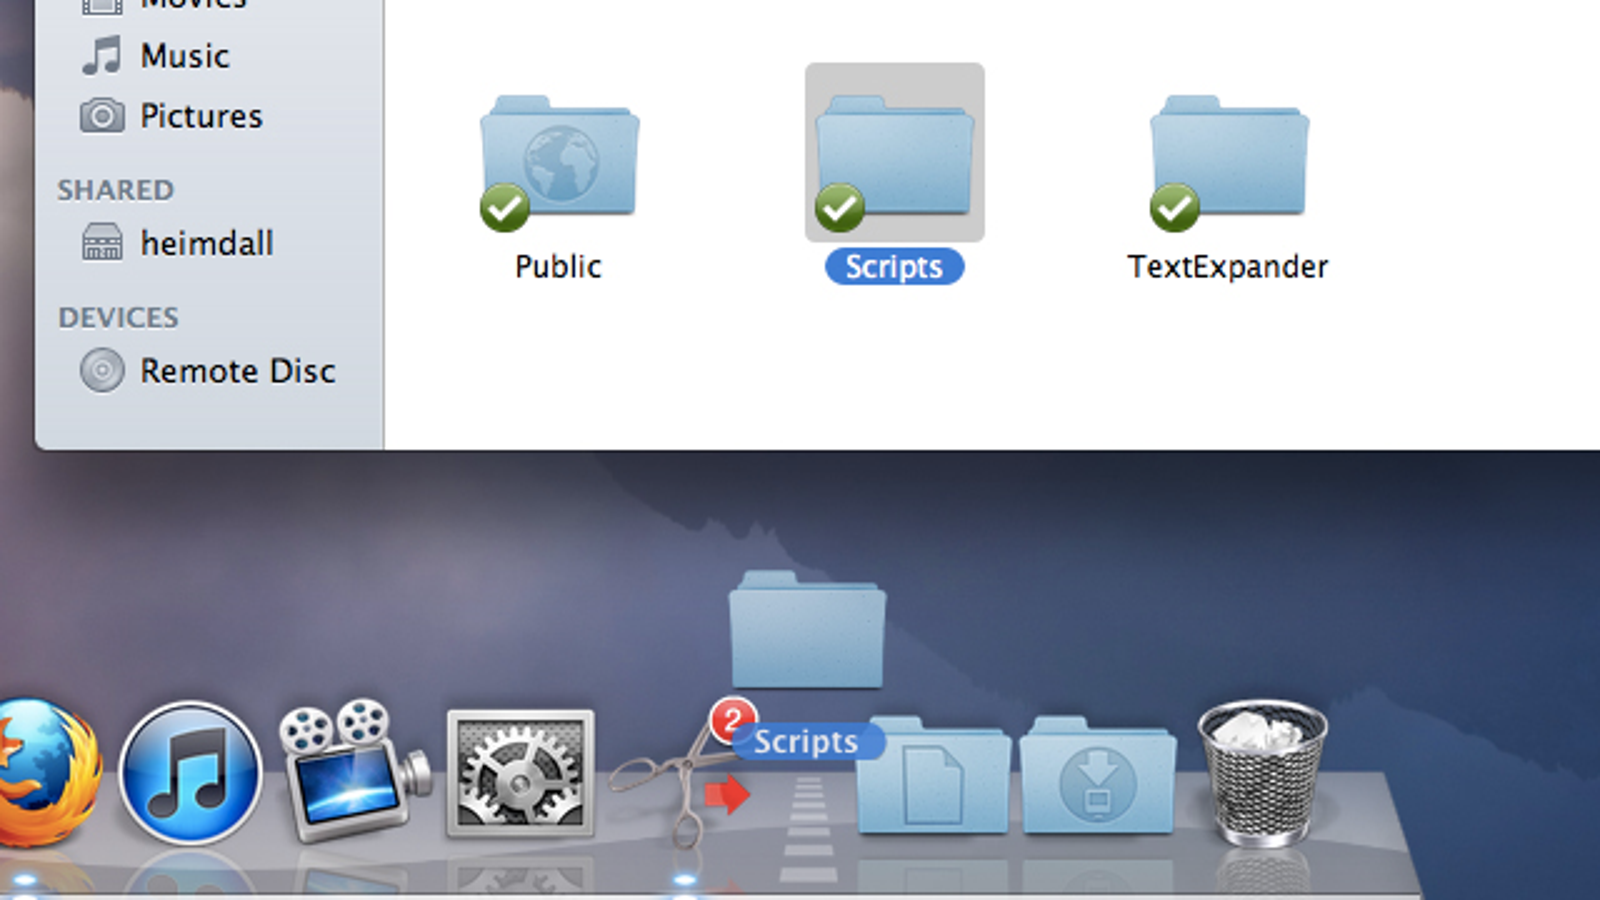 i have mac os x 10.7 5 how do i upgrade